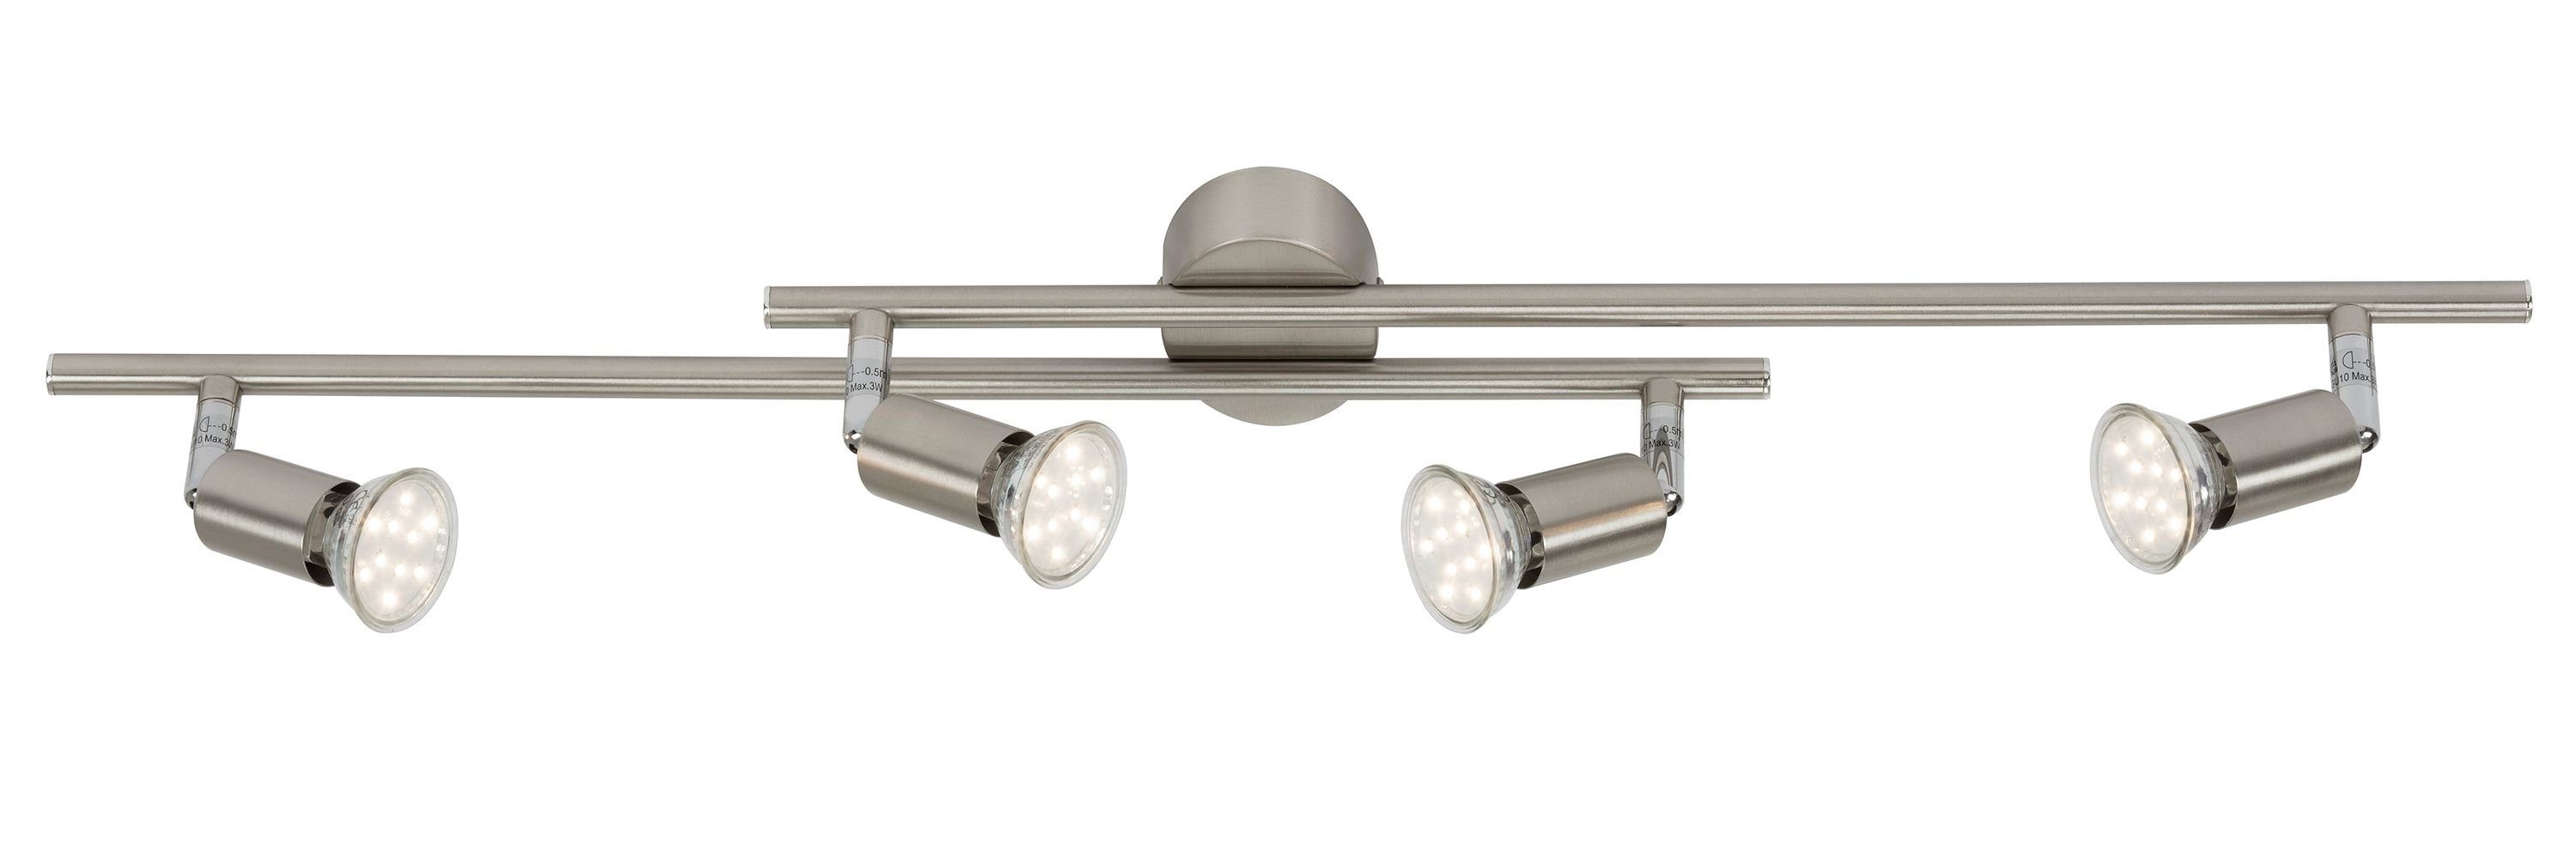 Briloner Leuchten LED Deckenspots 2767-042, LED wechselbar, Warmweiß, matt-nickel, GU10, Deckenlampe